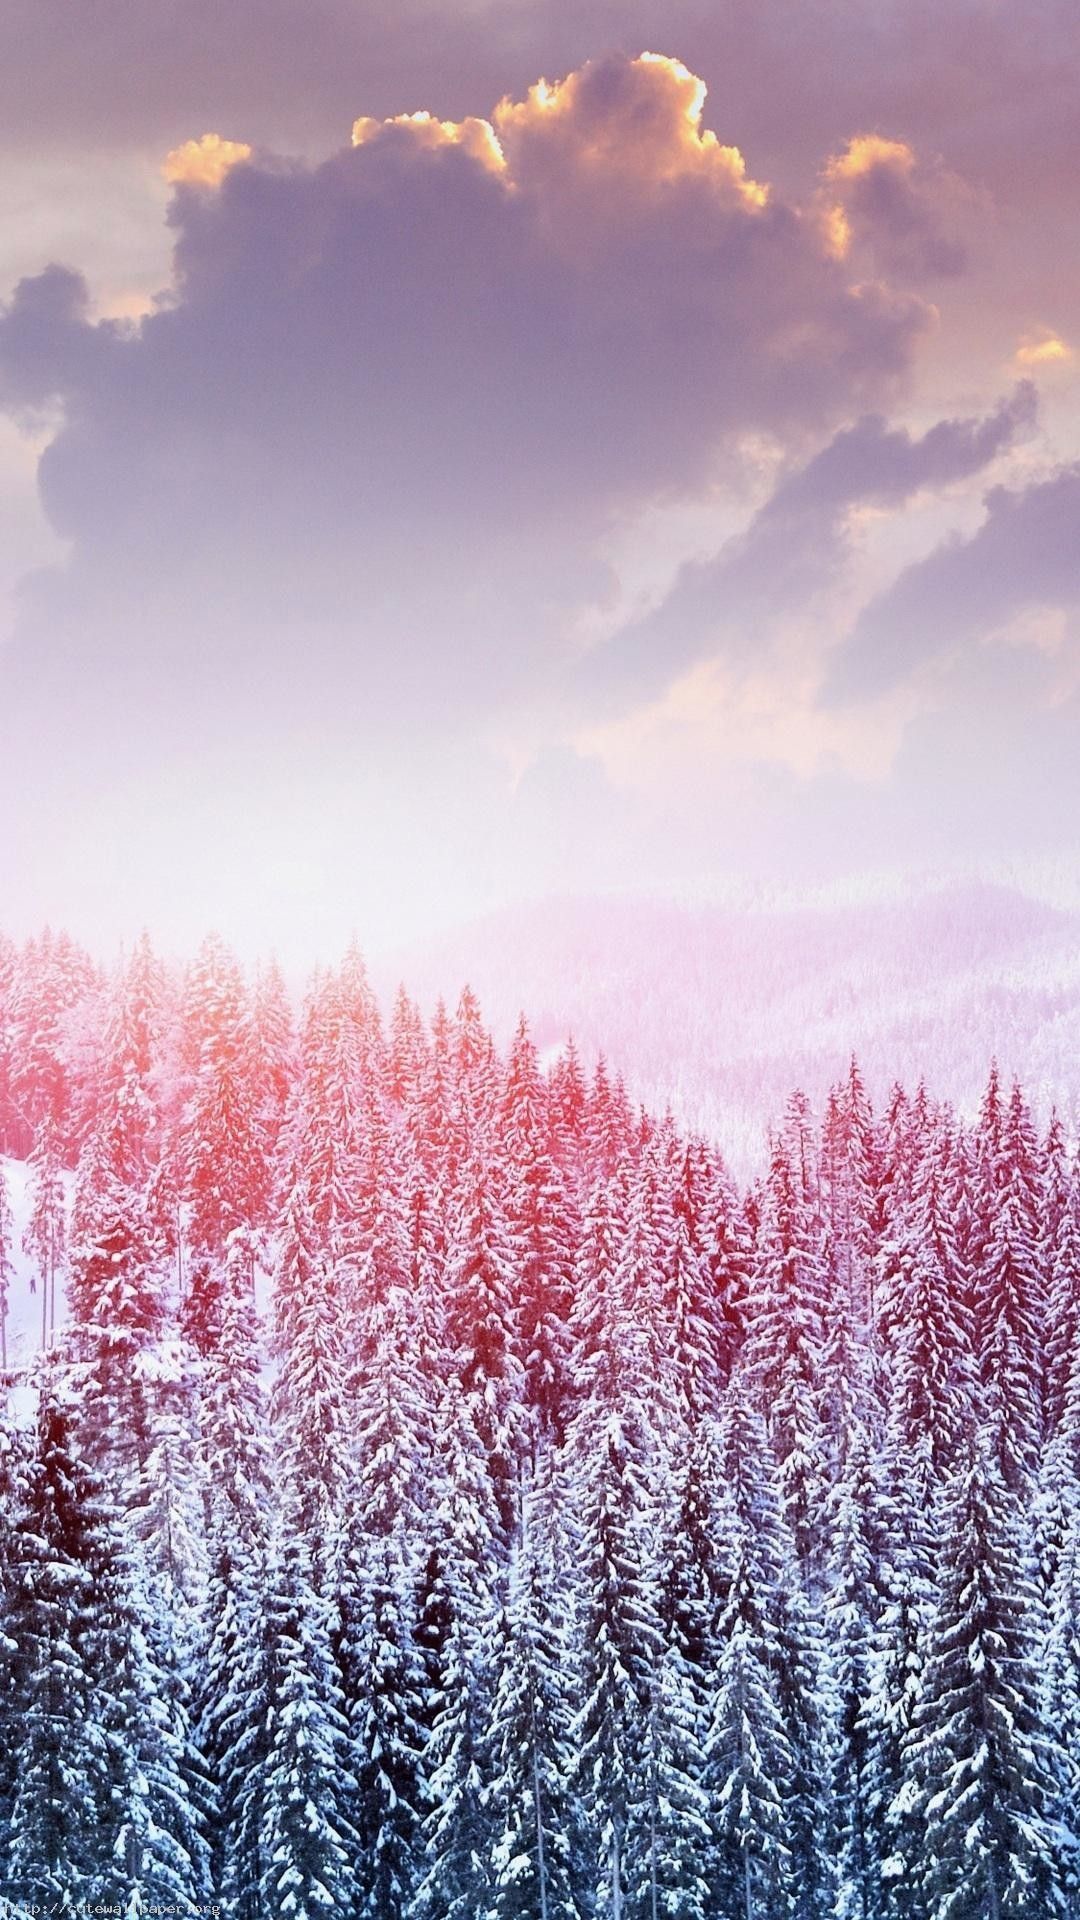 Schöner Hintergrundbild 1080x1920. Landscape wallpaper, Winter wallpaper, iPhone wallpaper winter